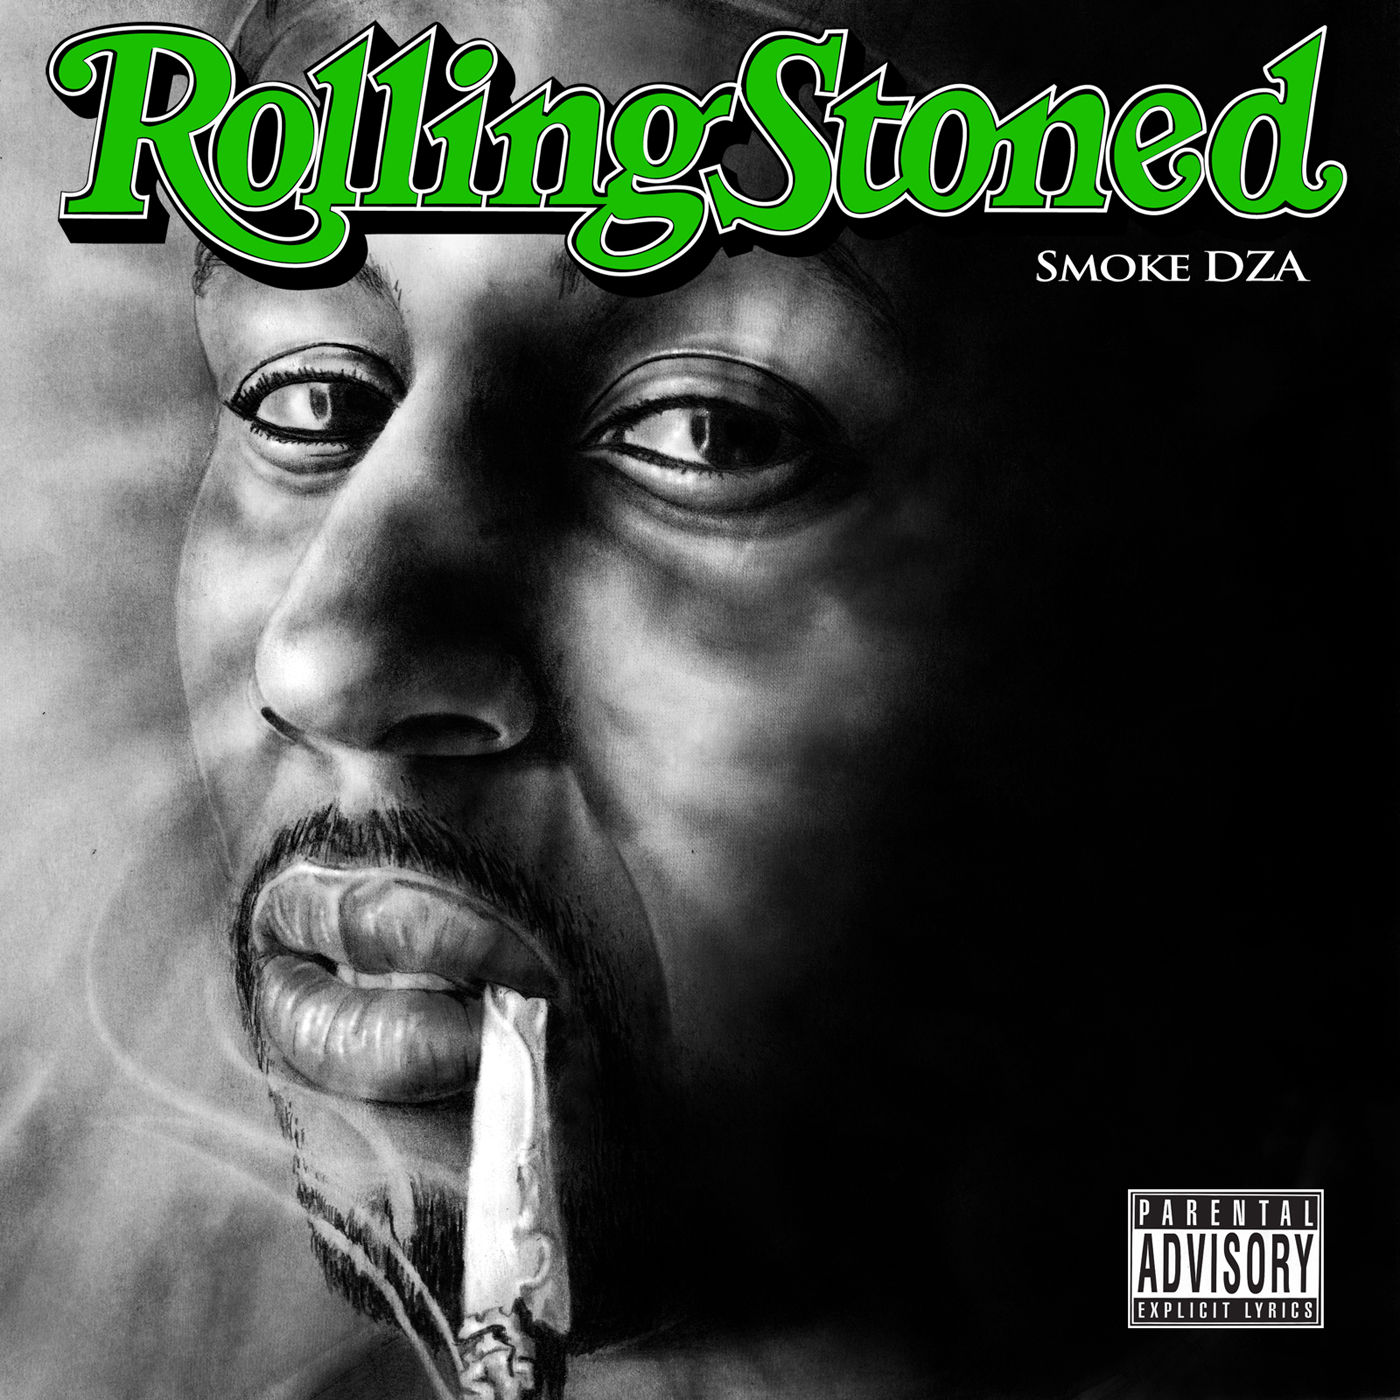 Smoke dza rolling stoned zip rar password download